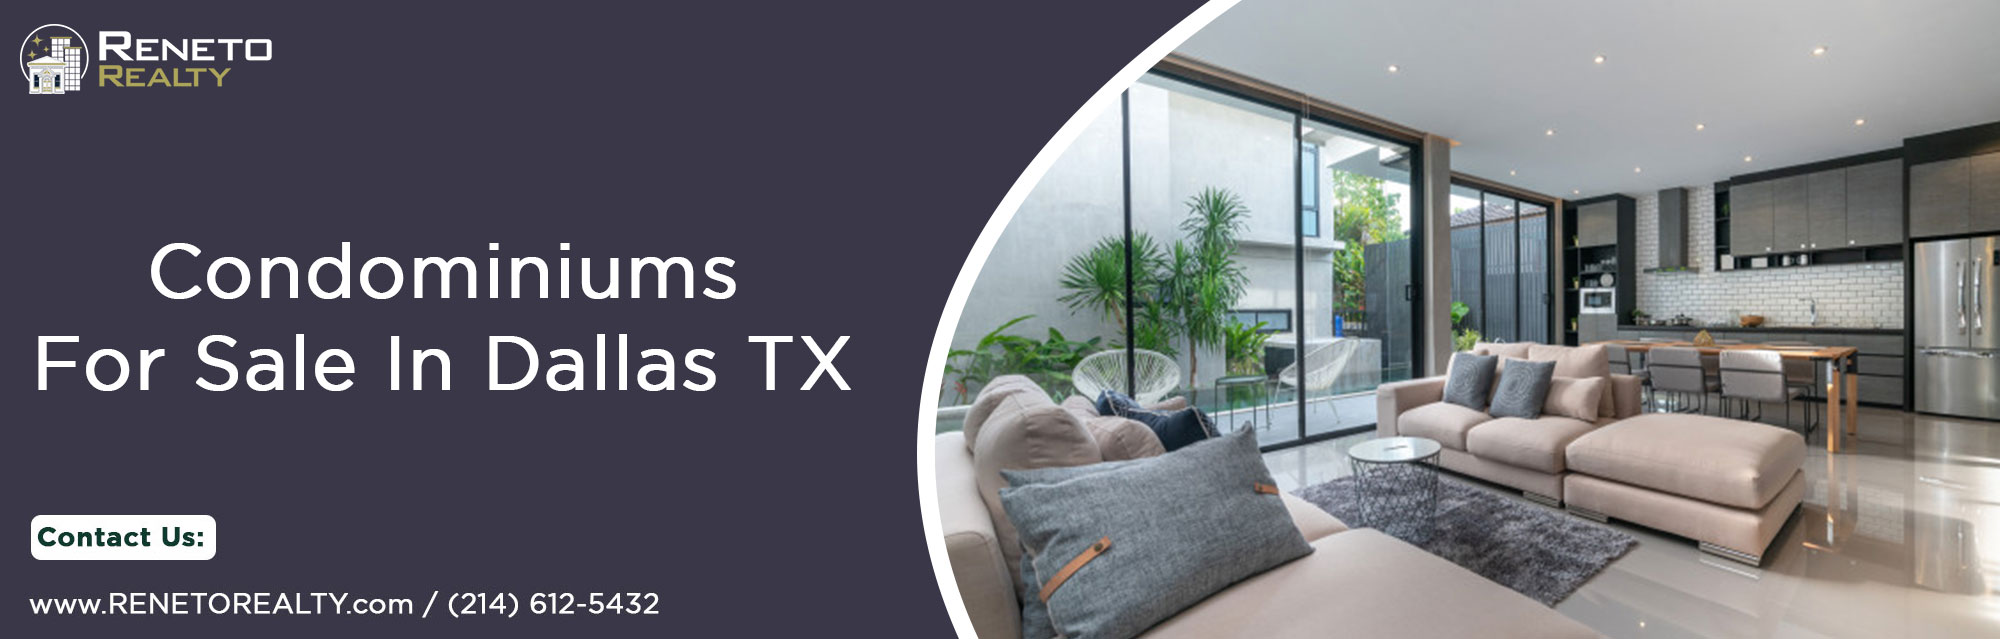 Condominiums for sale in Dallas Texas - My Blog